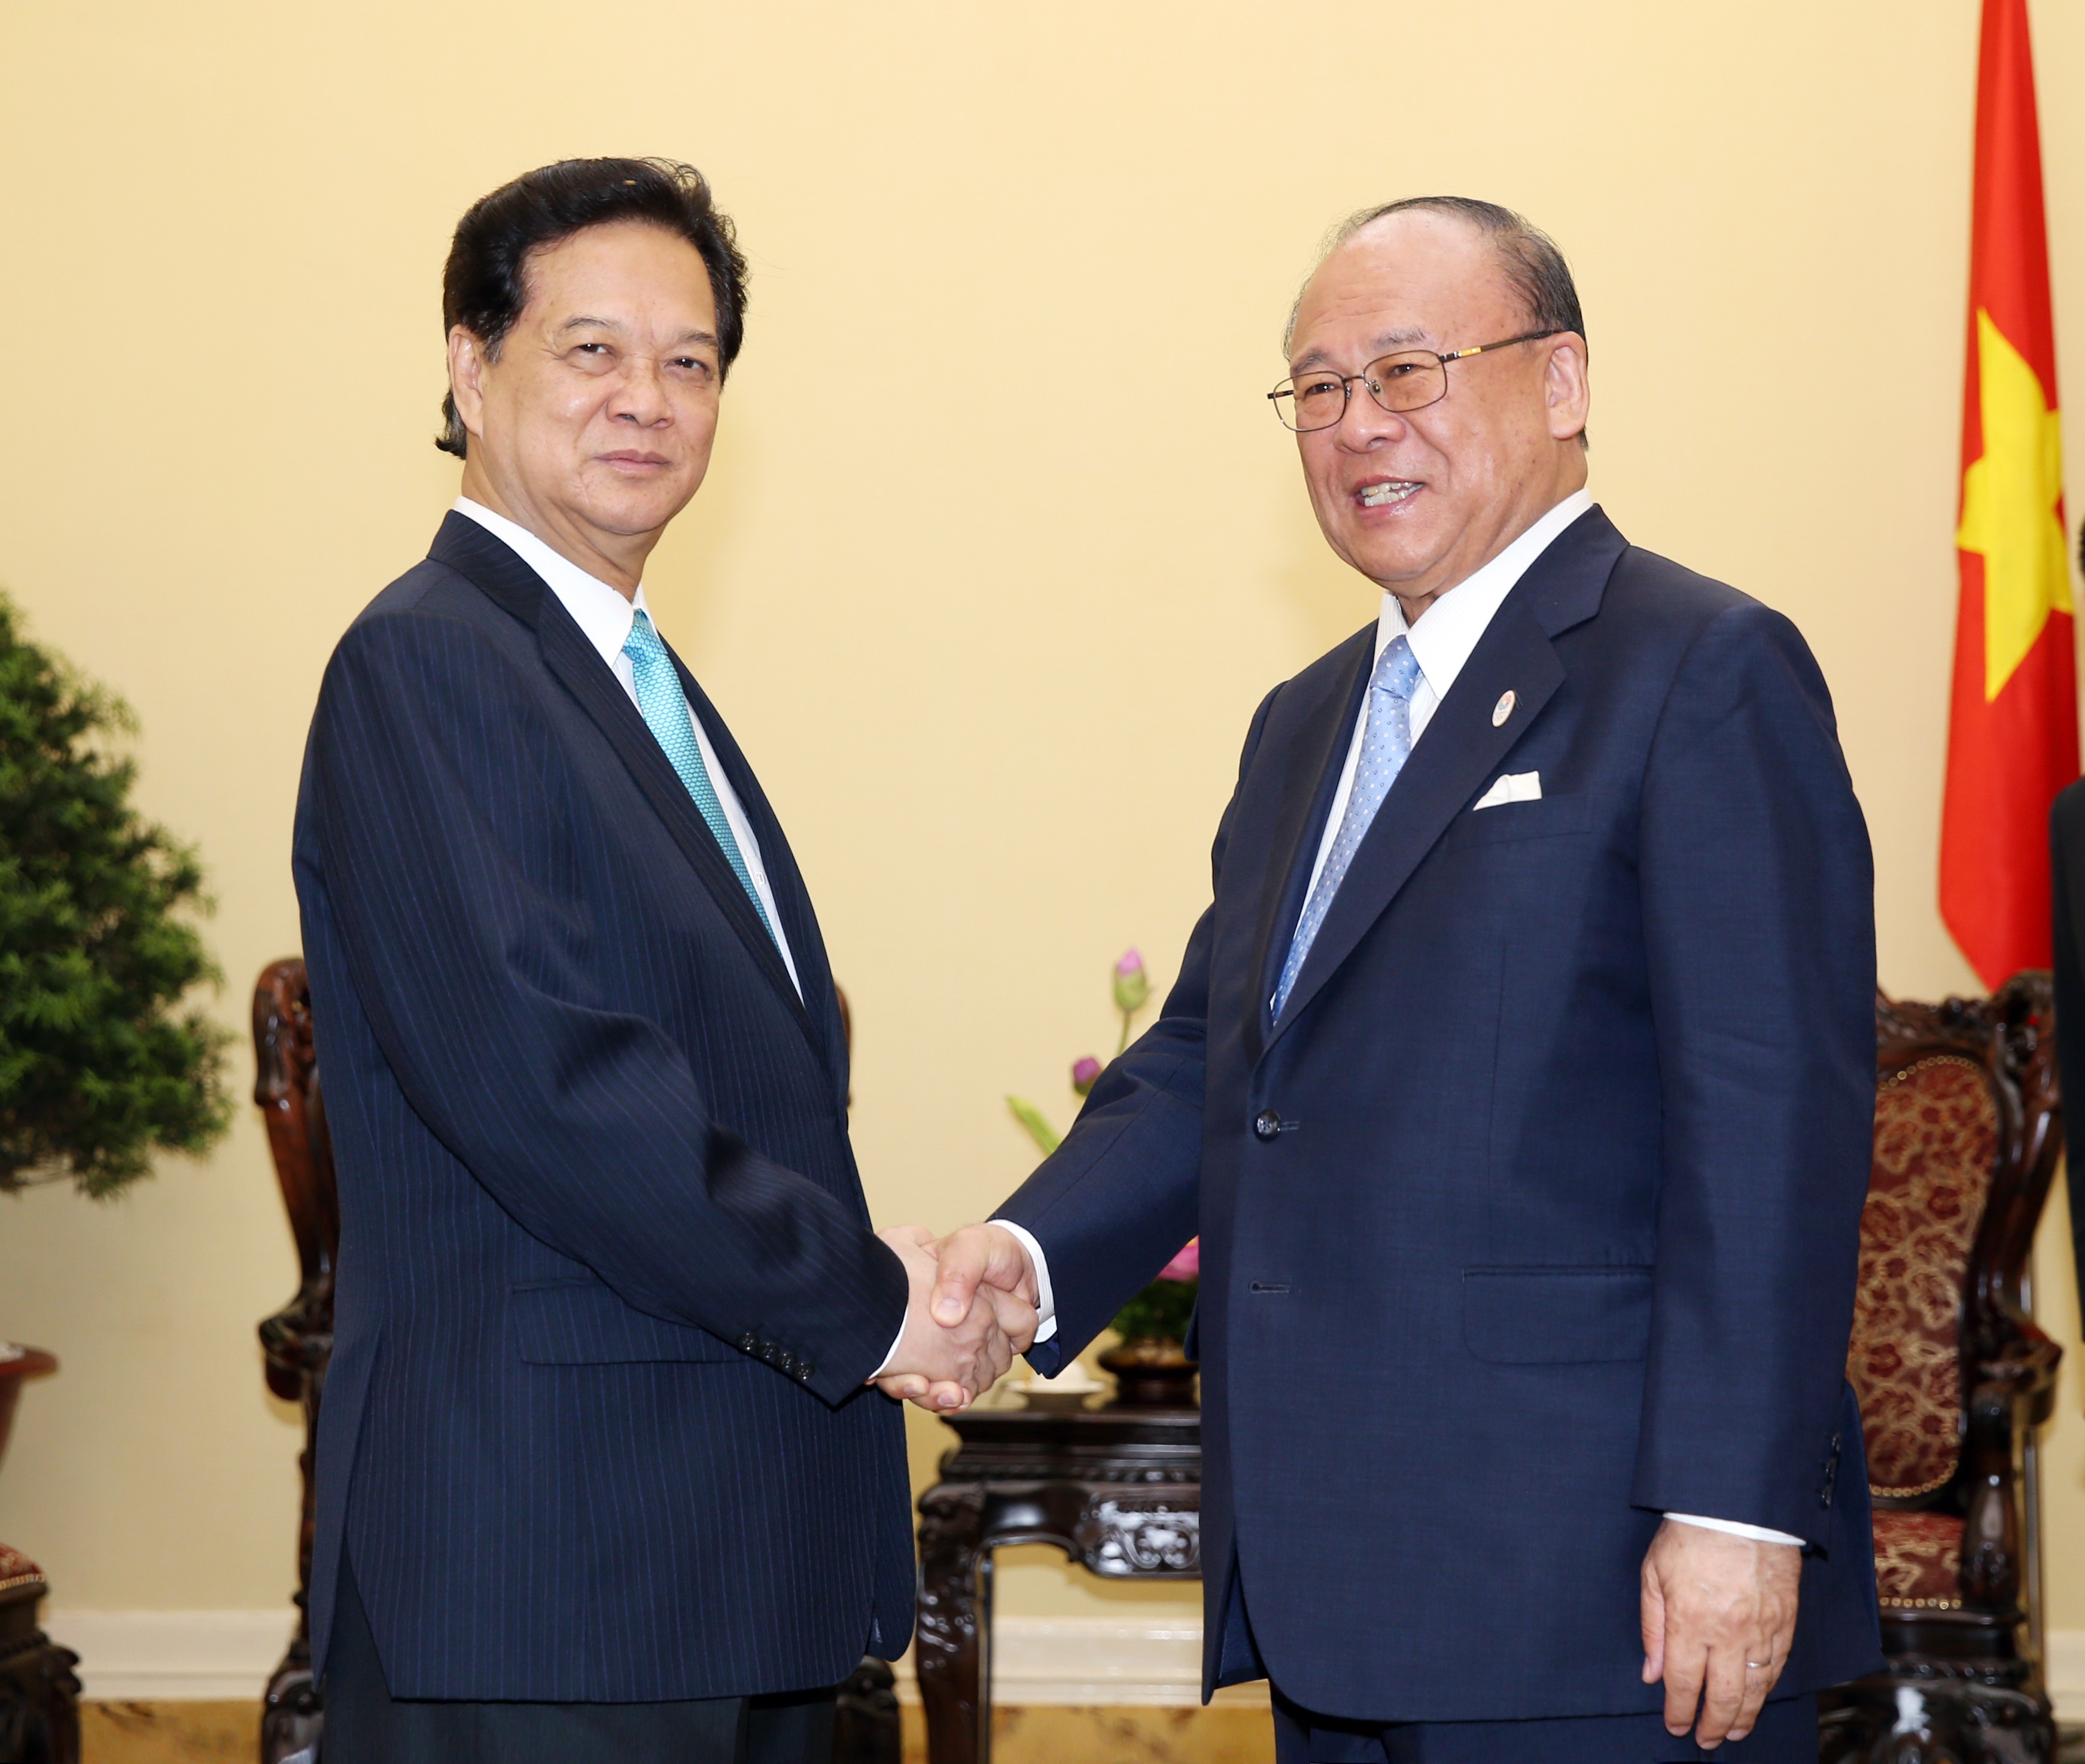 Thủ tướng tiếp cố vấn đặc biệt Liên minh nghị sĩ hữu nghị Nhật- Việt